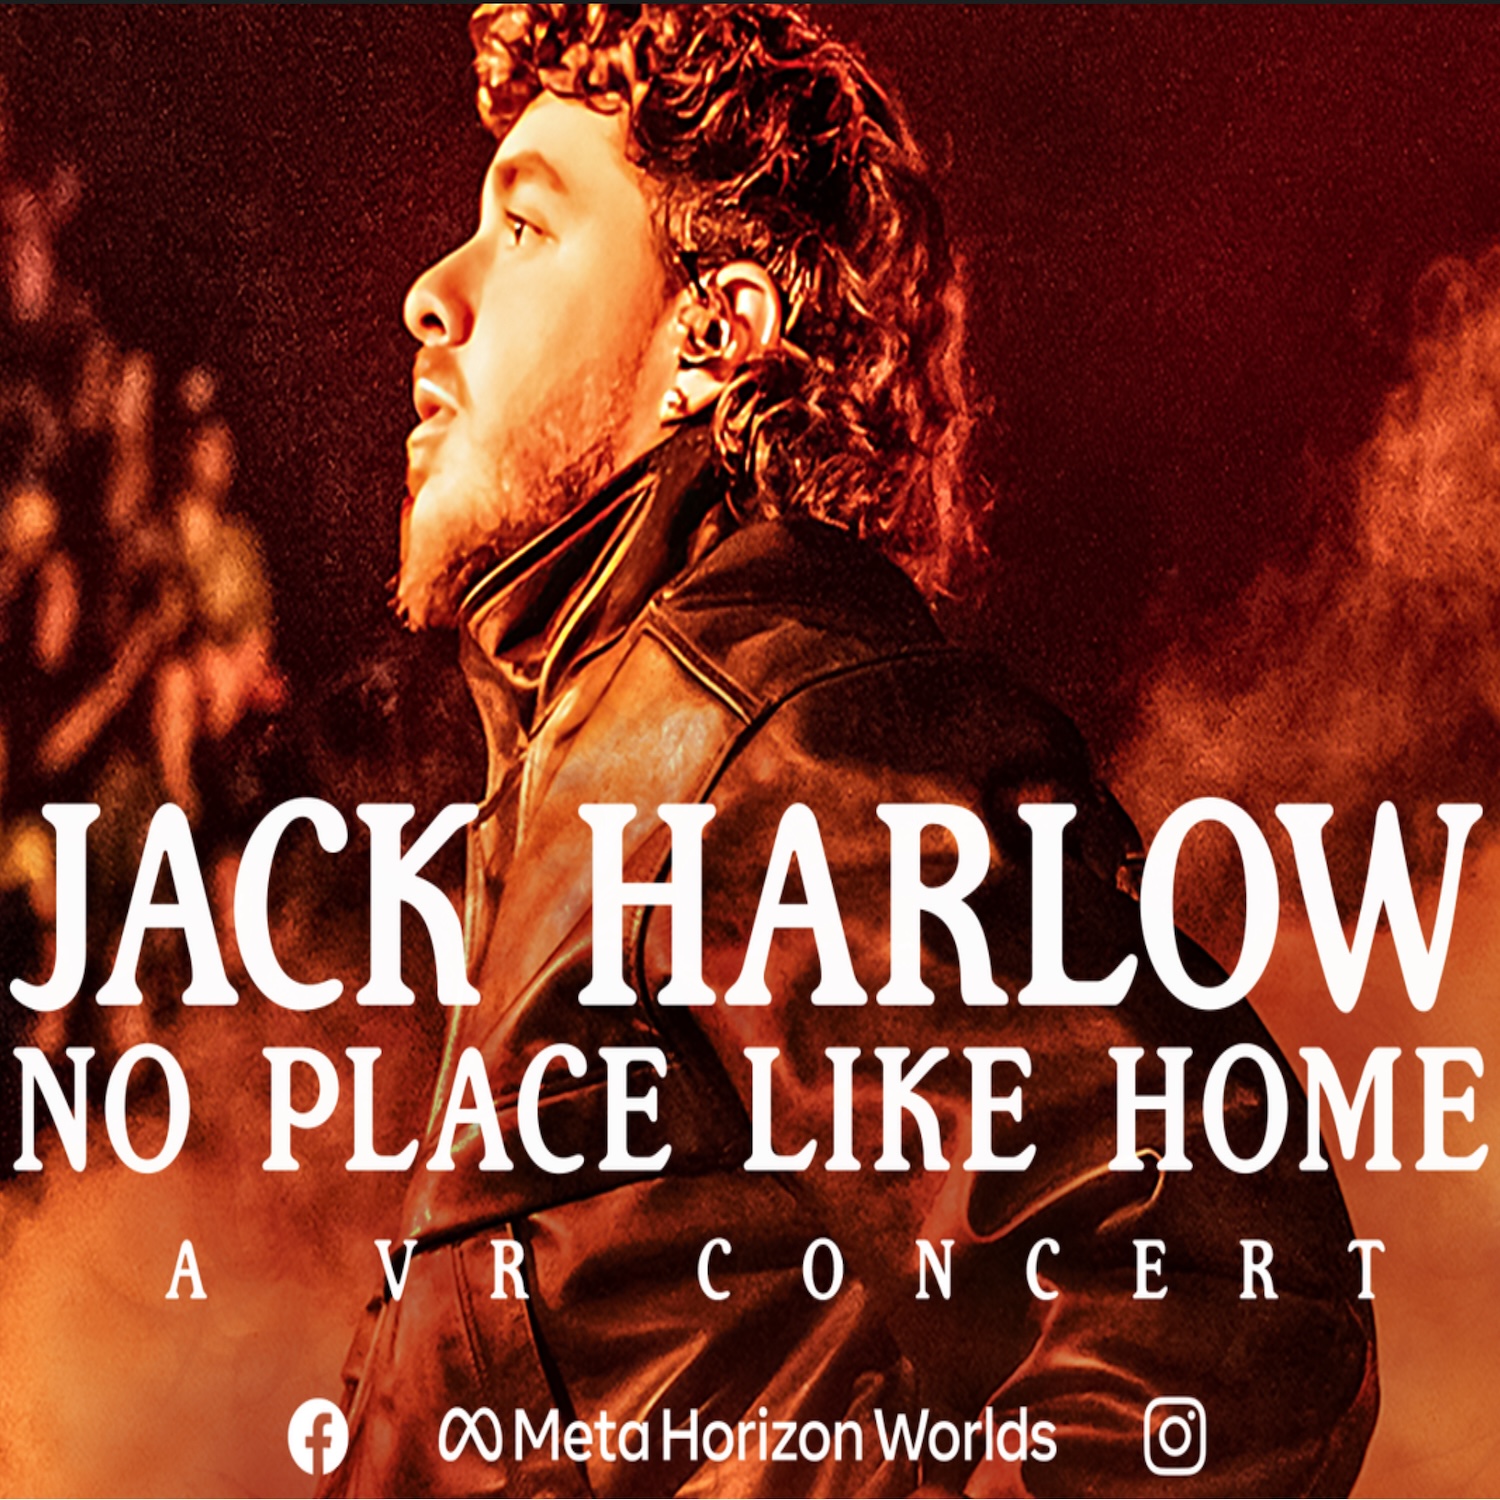 JACK HARLOW - VR Concert